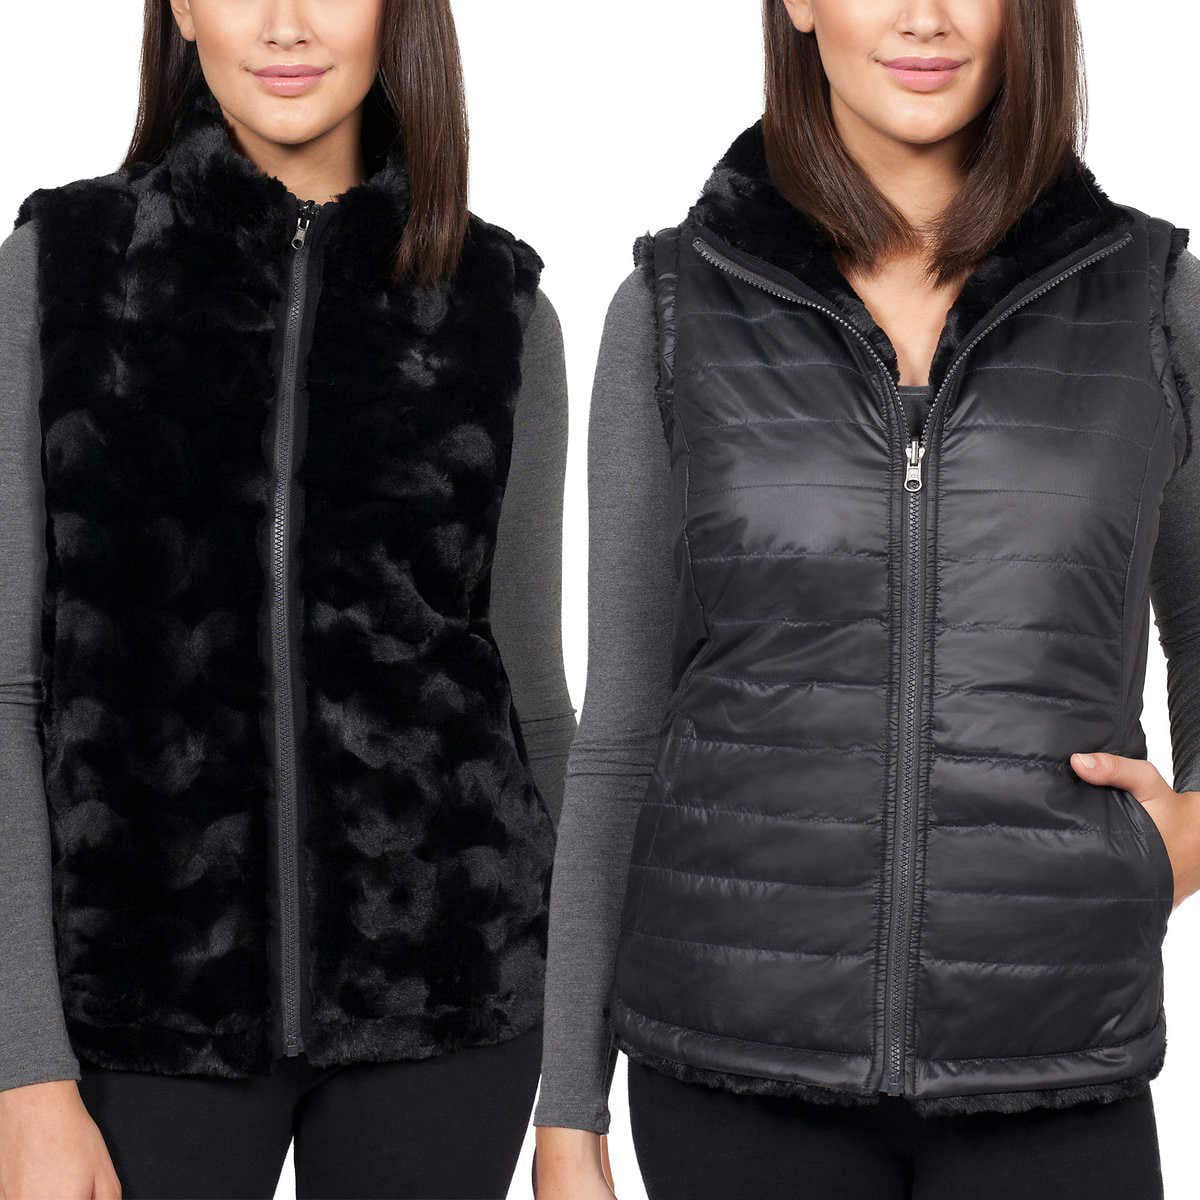 Nicolle Miller Women's Vest Black Reversible Faux Fur (Black, Small)